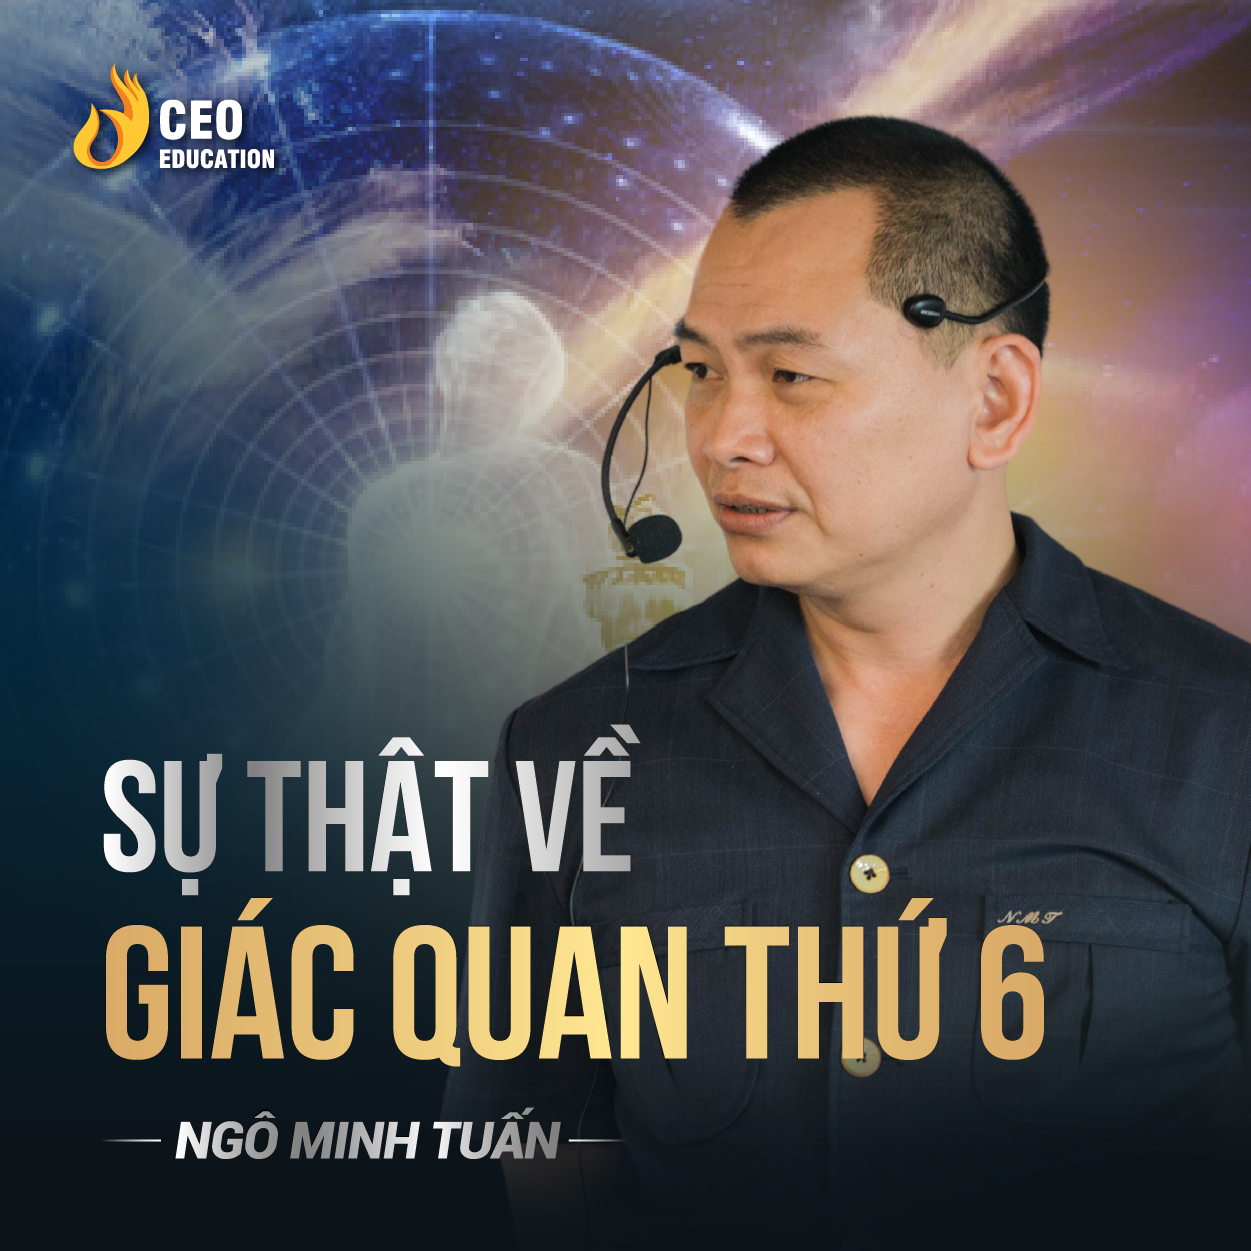 Sự thật về giác quan thứ 6 | Ngô Minh Tuấn | Học Viện CEO Việt Nam